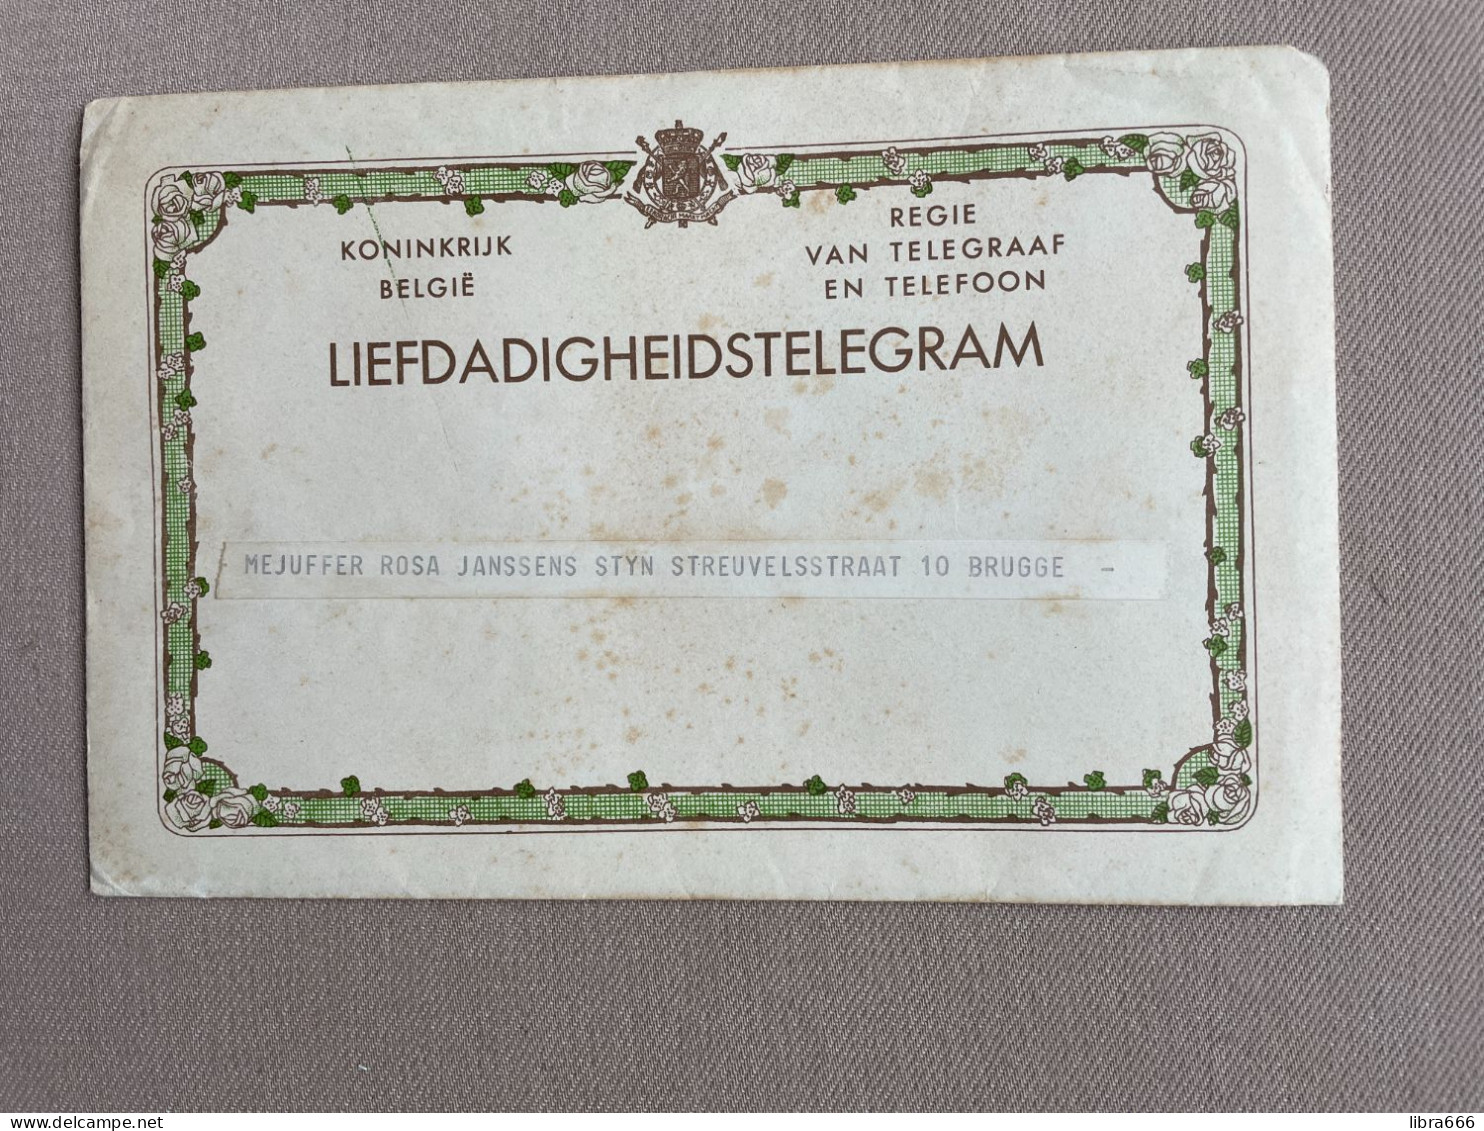 LIEFDADIGHEIDSTELEGRAM Met ENVELOP - BRUGGE (1959) - JANSSSENS / SIEUW - Telegrams